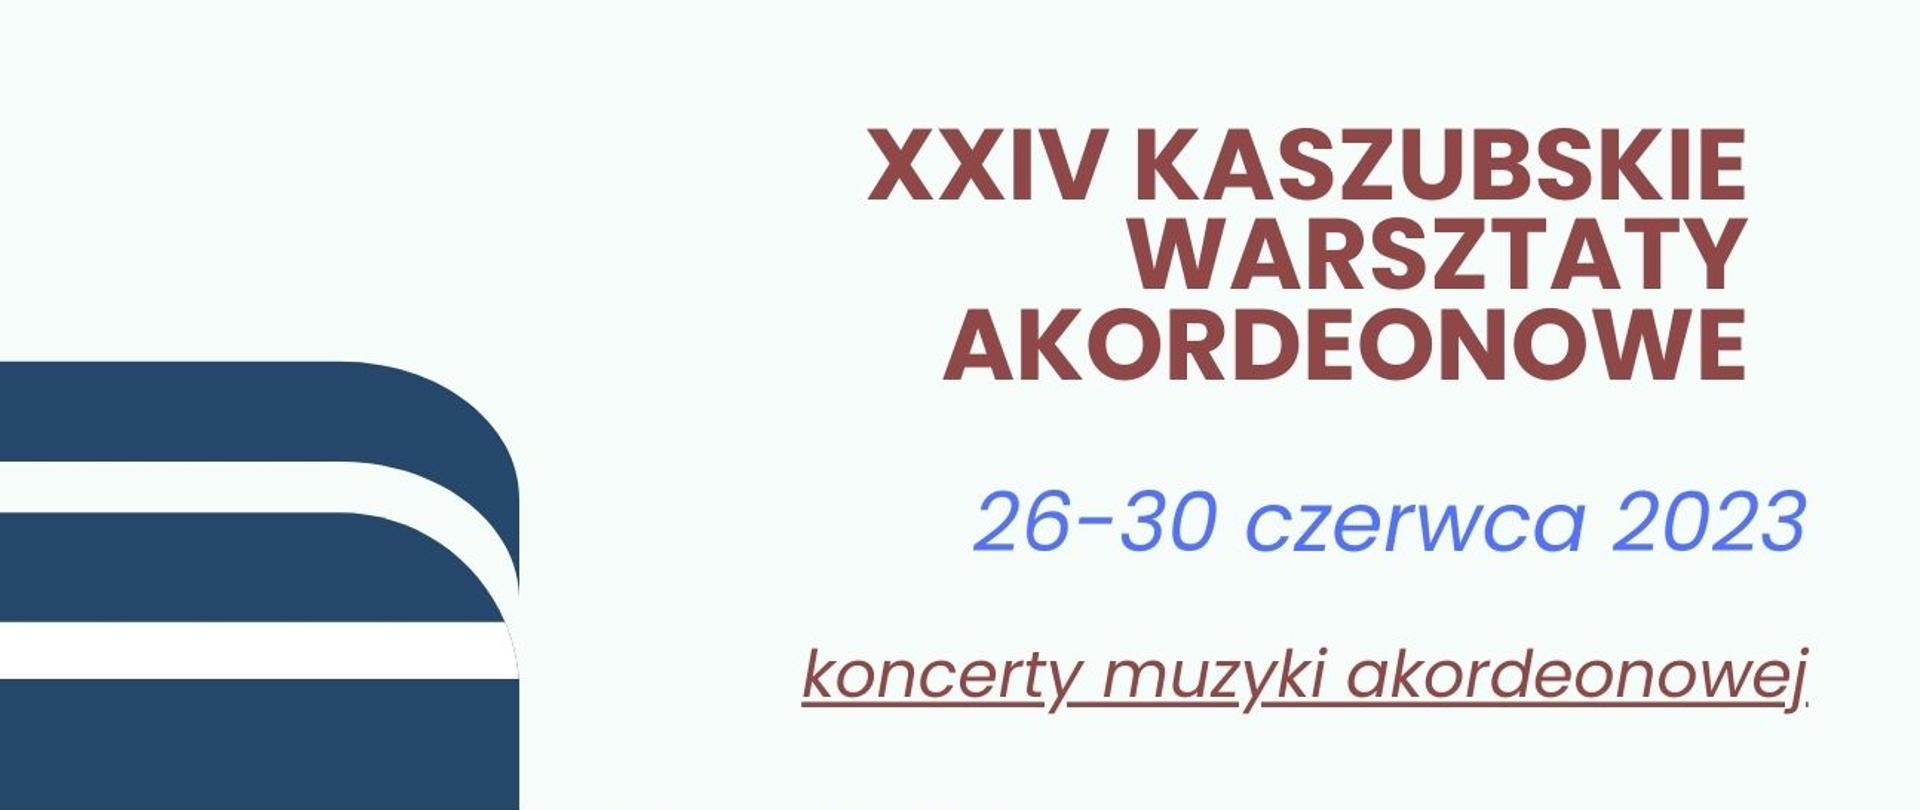 Plakat z grafiką informującą o koncertach towarzyszących XXIV Kaszubskim Warsztatom Akordeonowym. Po lewej stronie plakatu grafika symbolizująca pionowo ustawioną klawiaturę fortepianową. Teksty informacyjne w kolorze brązowym oraz niebieskim.